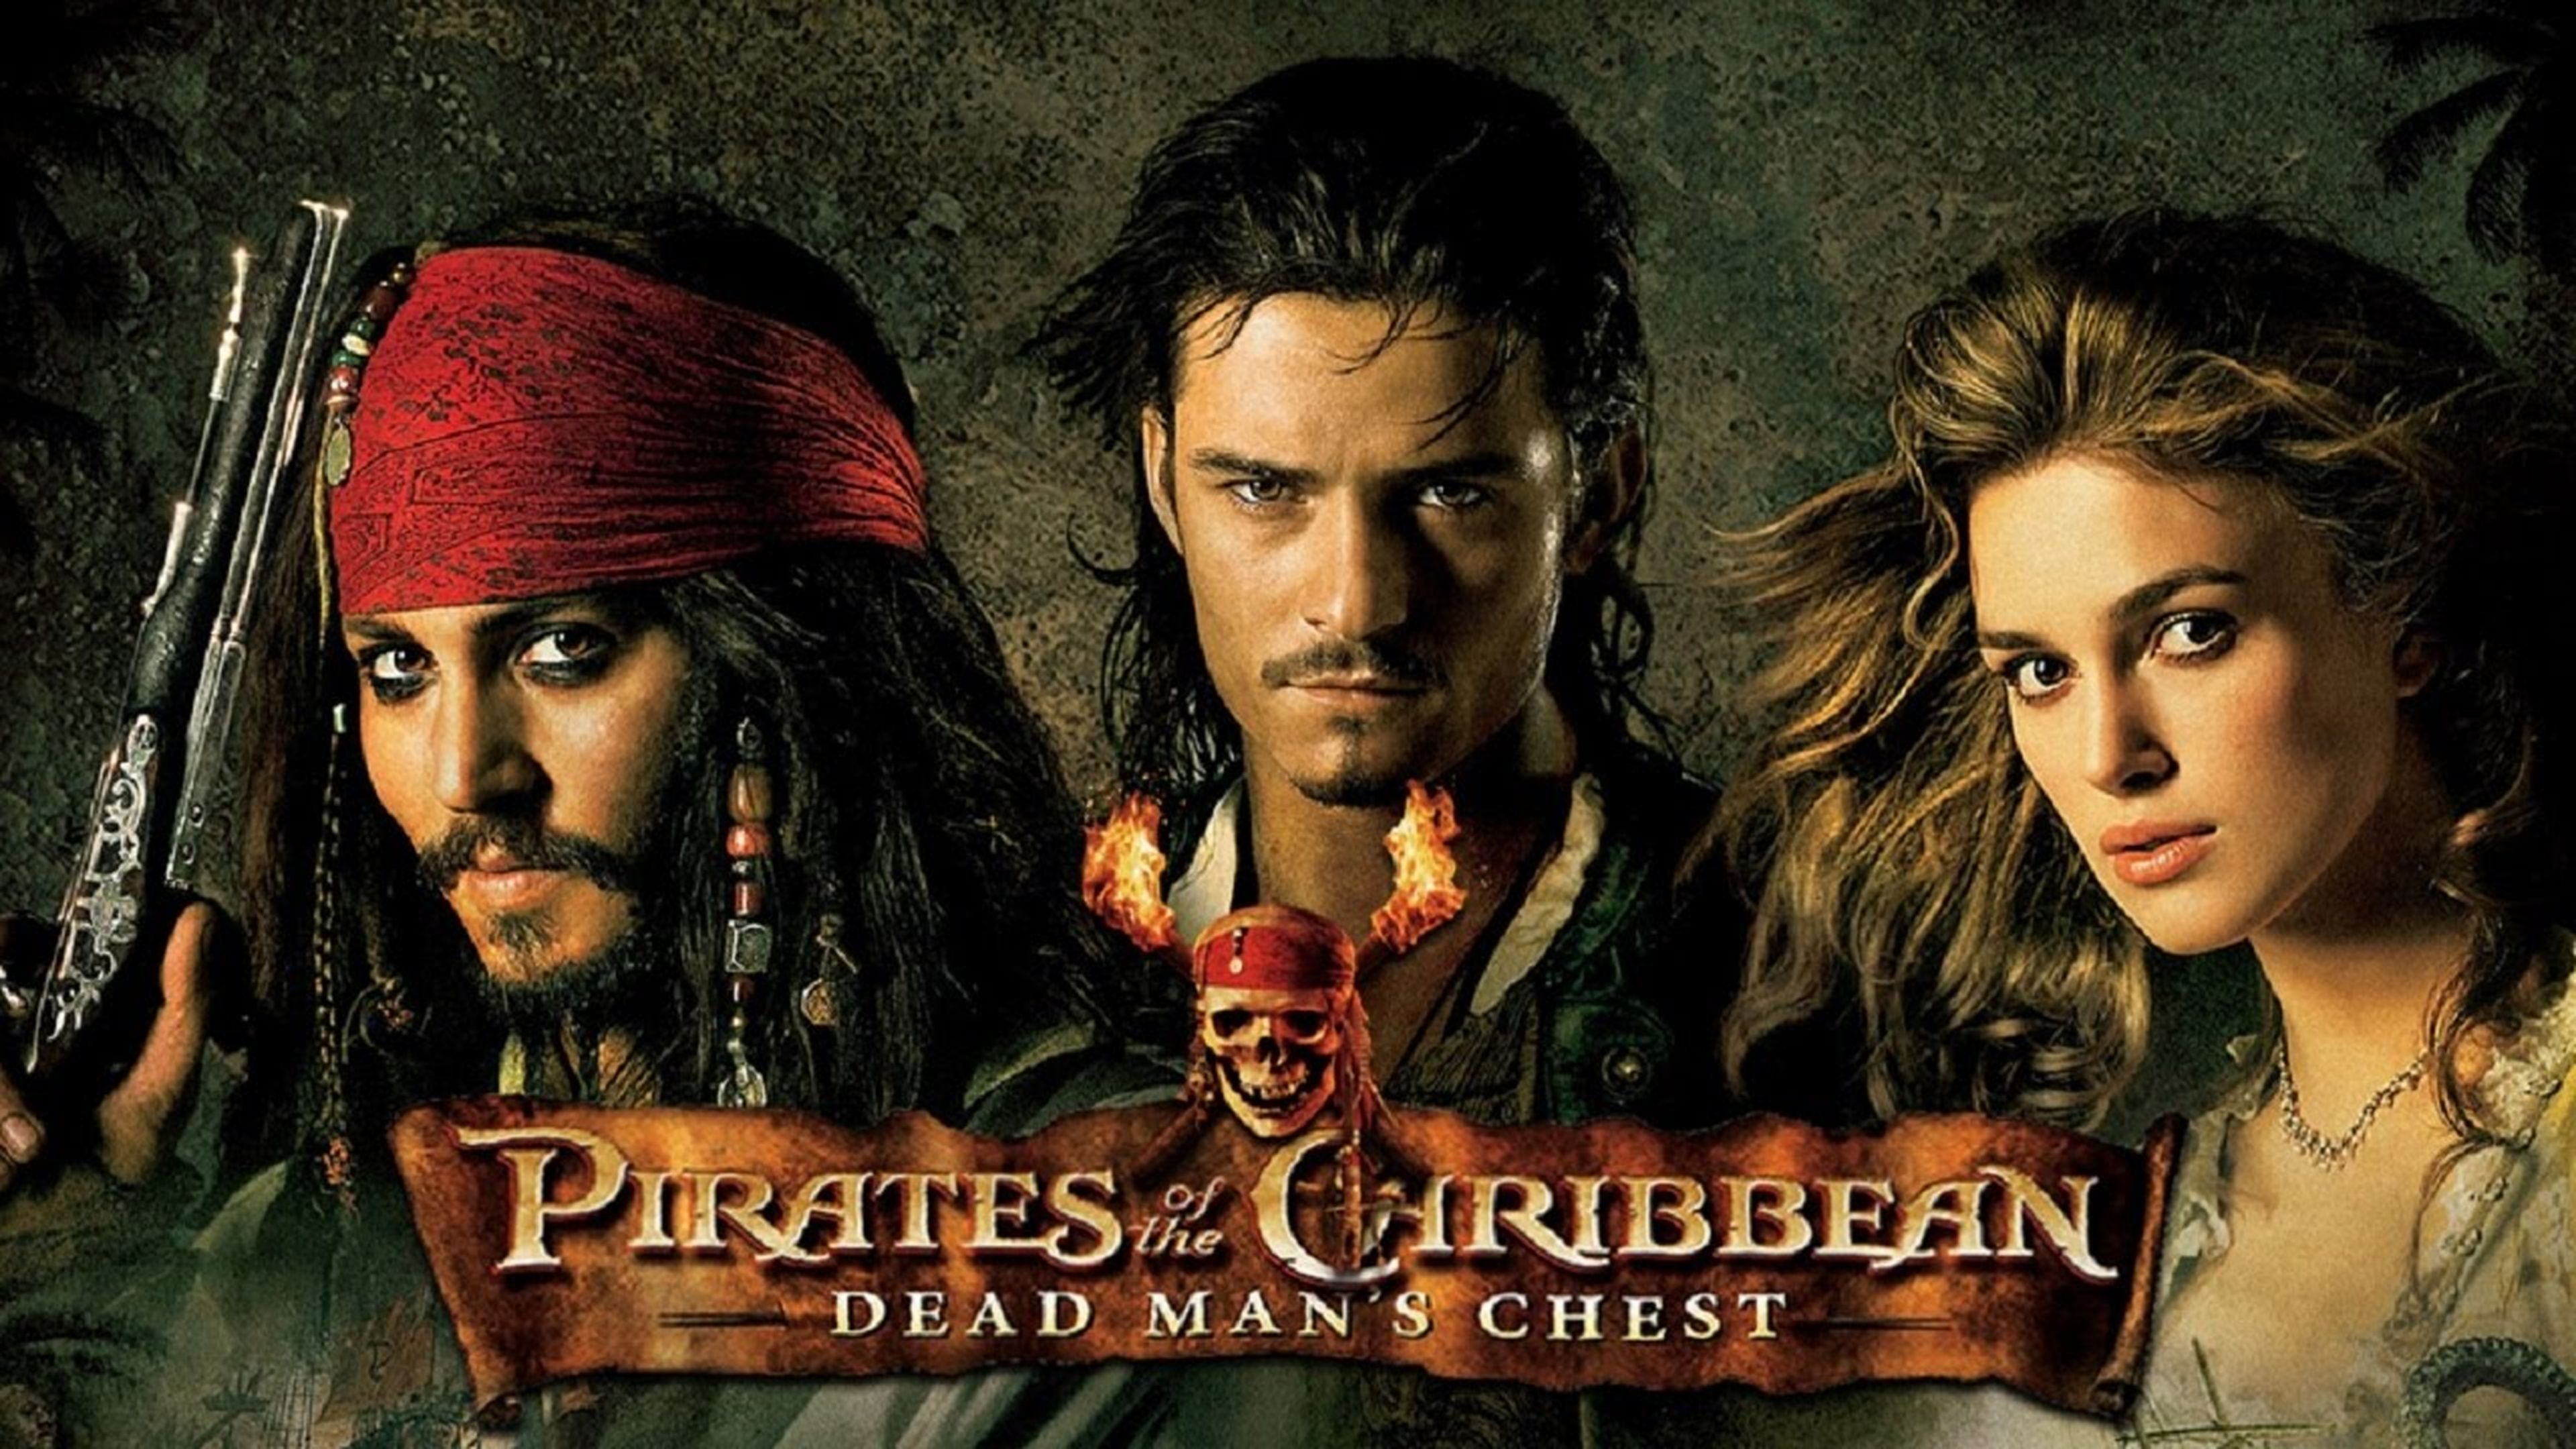 2006 - Piratas del Caribe: El cofre del Hombre Muerto